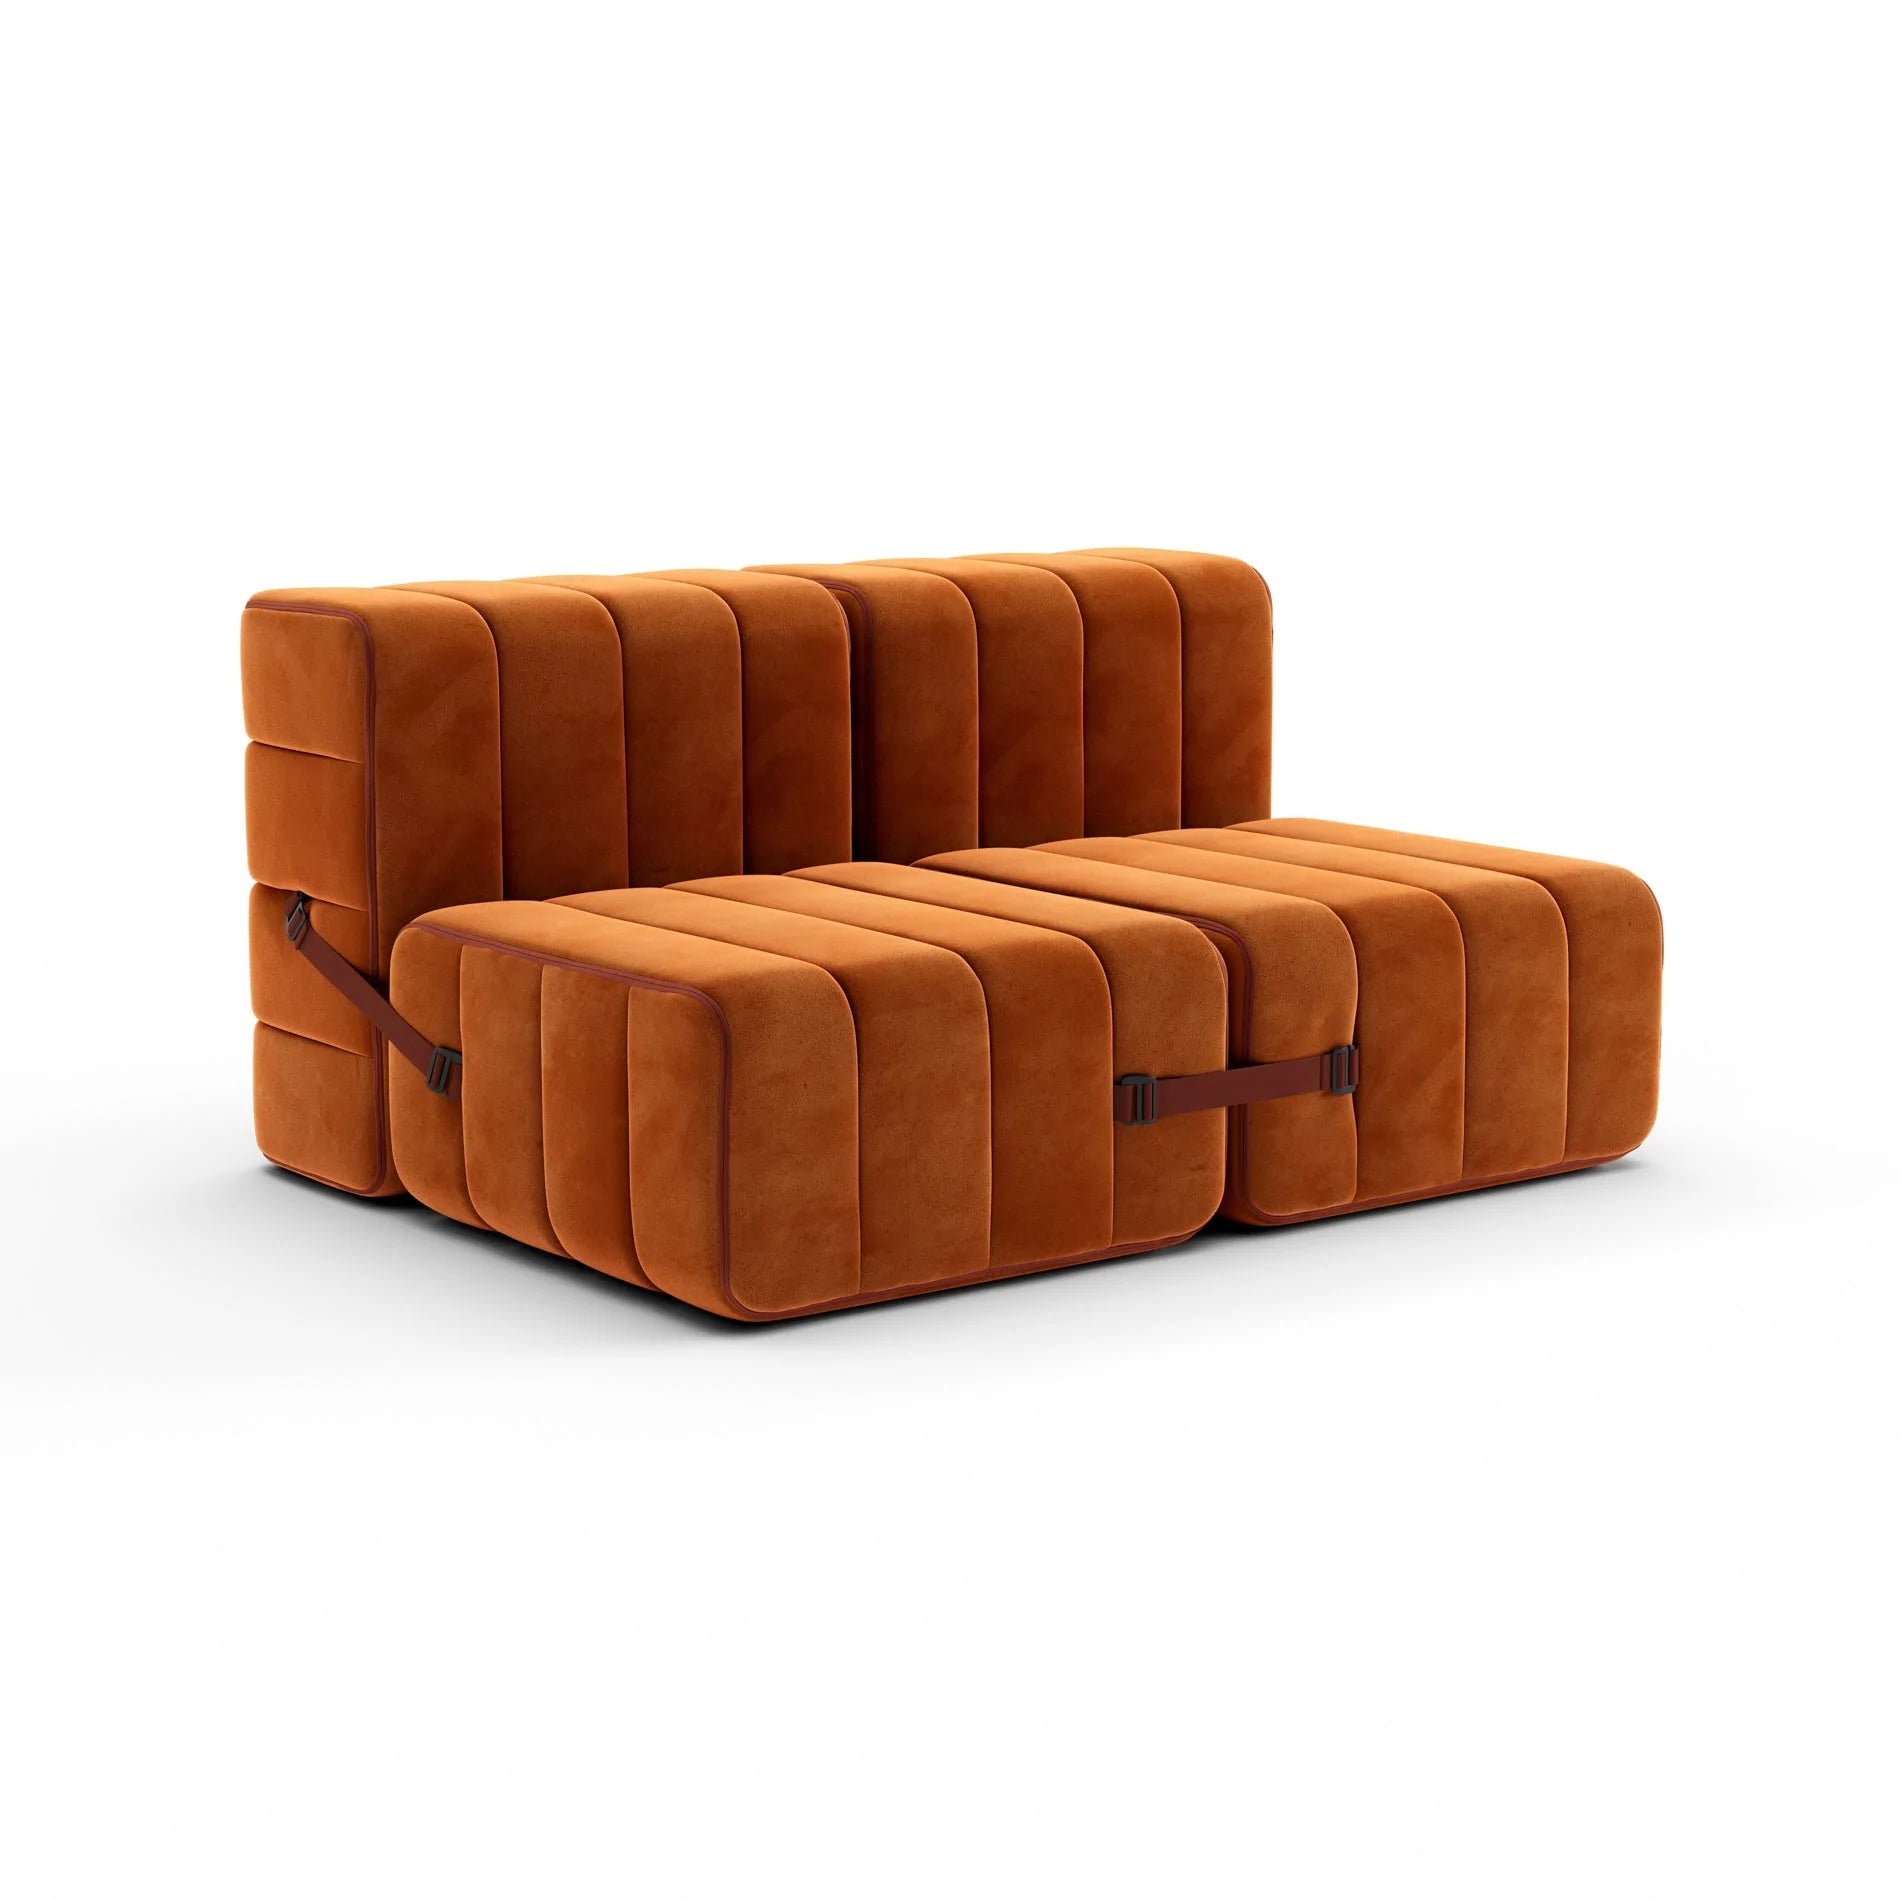 Modulares Sofa-System Curt - Barcelona Russet Sofas von Ambivalenz